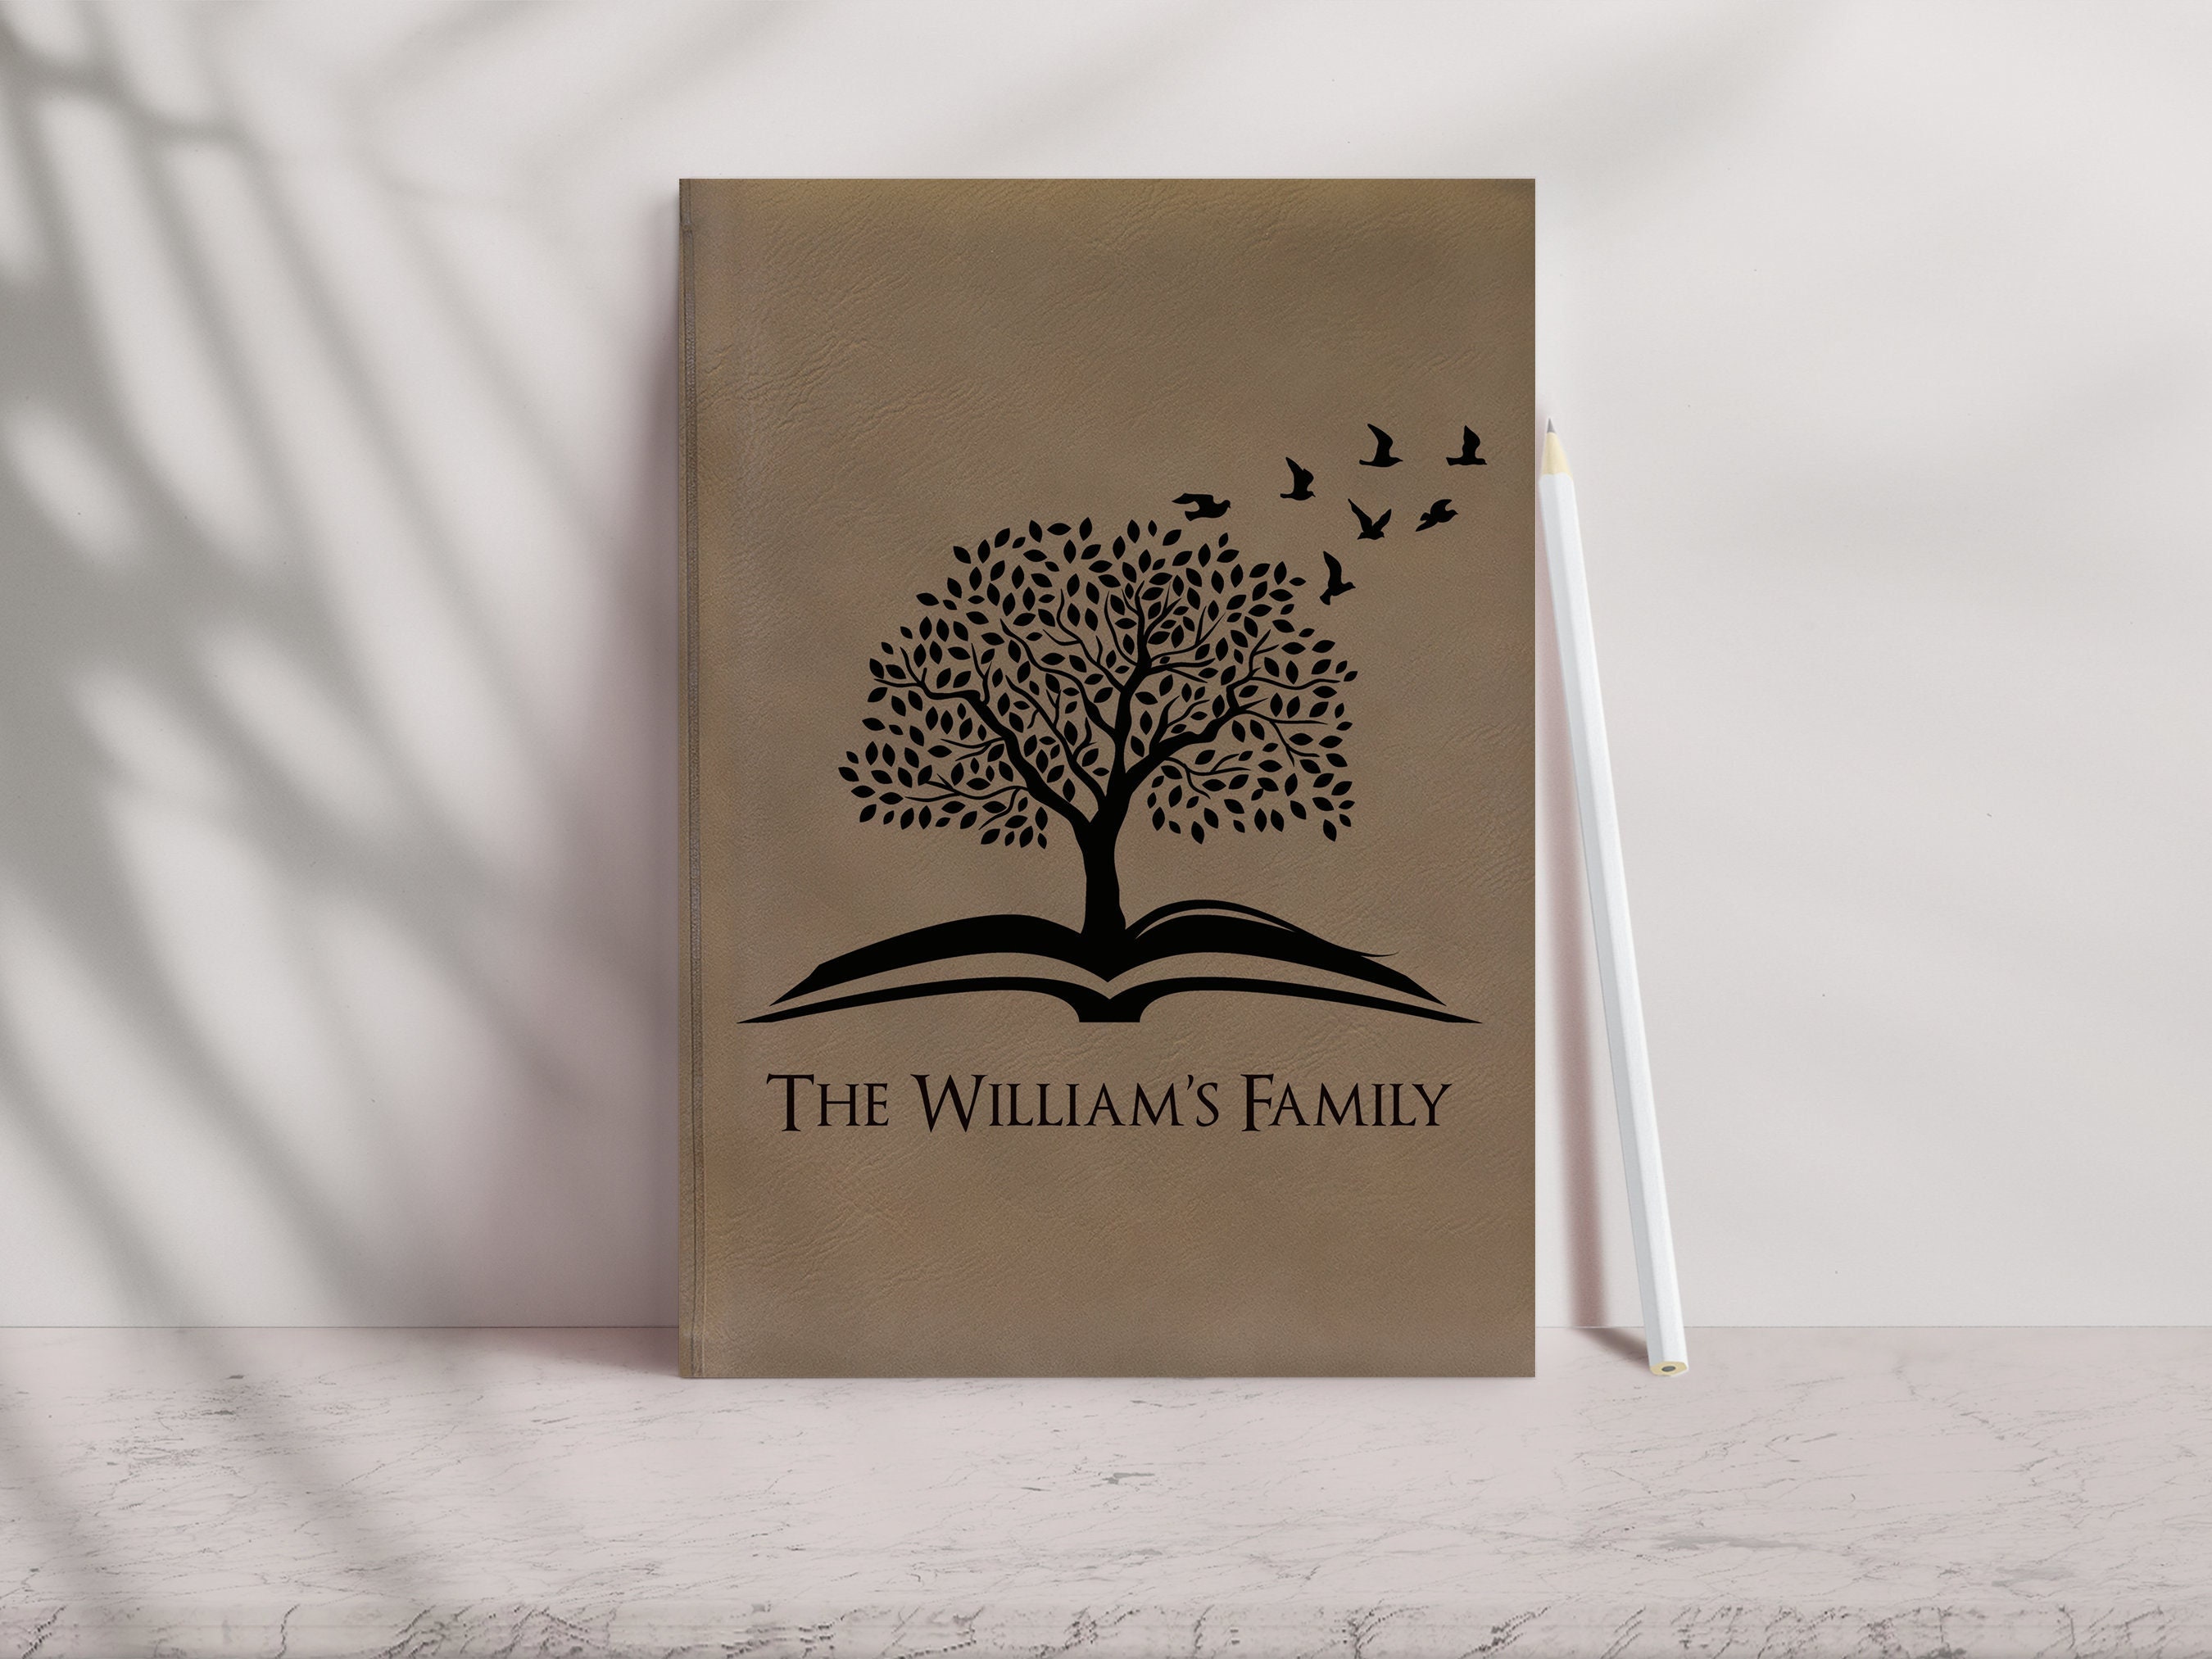 Genealogy Organizer, Family History, Ancestry Book, Family Tree